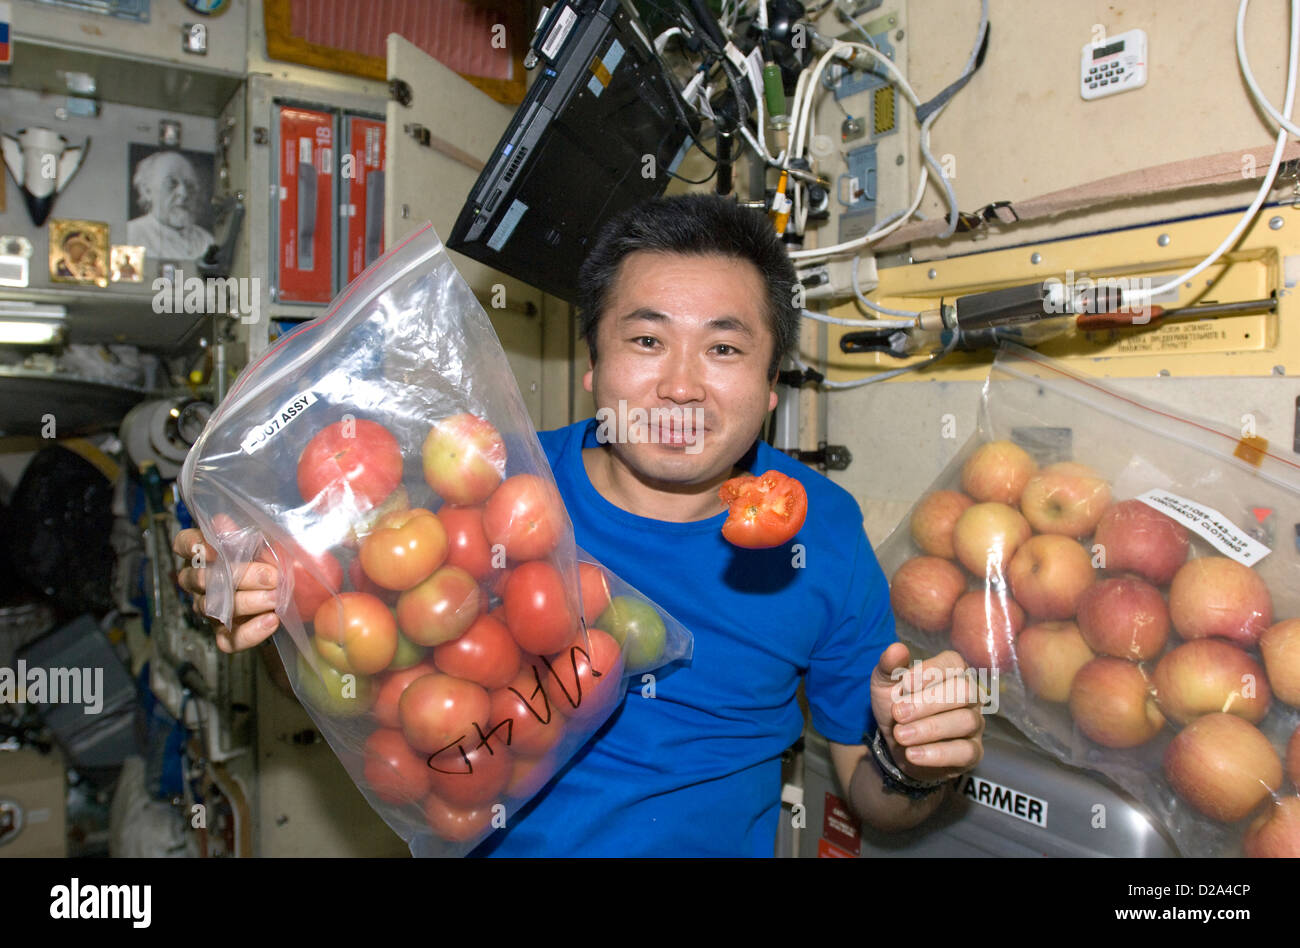 13 de mayo de 2009 la Agencia de Exploración Aeroespacial de Japón (JAXA) el astronauta Koichi Wakata Expedición 19/20 Ingeniero de vuelo es retratada Foto de stock